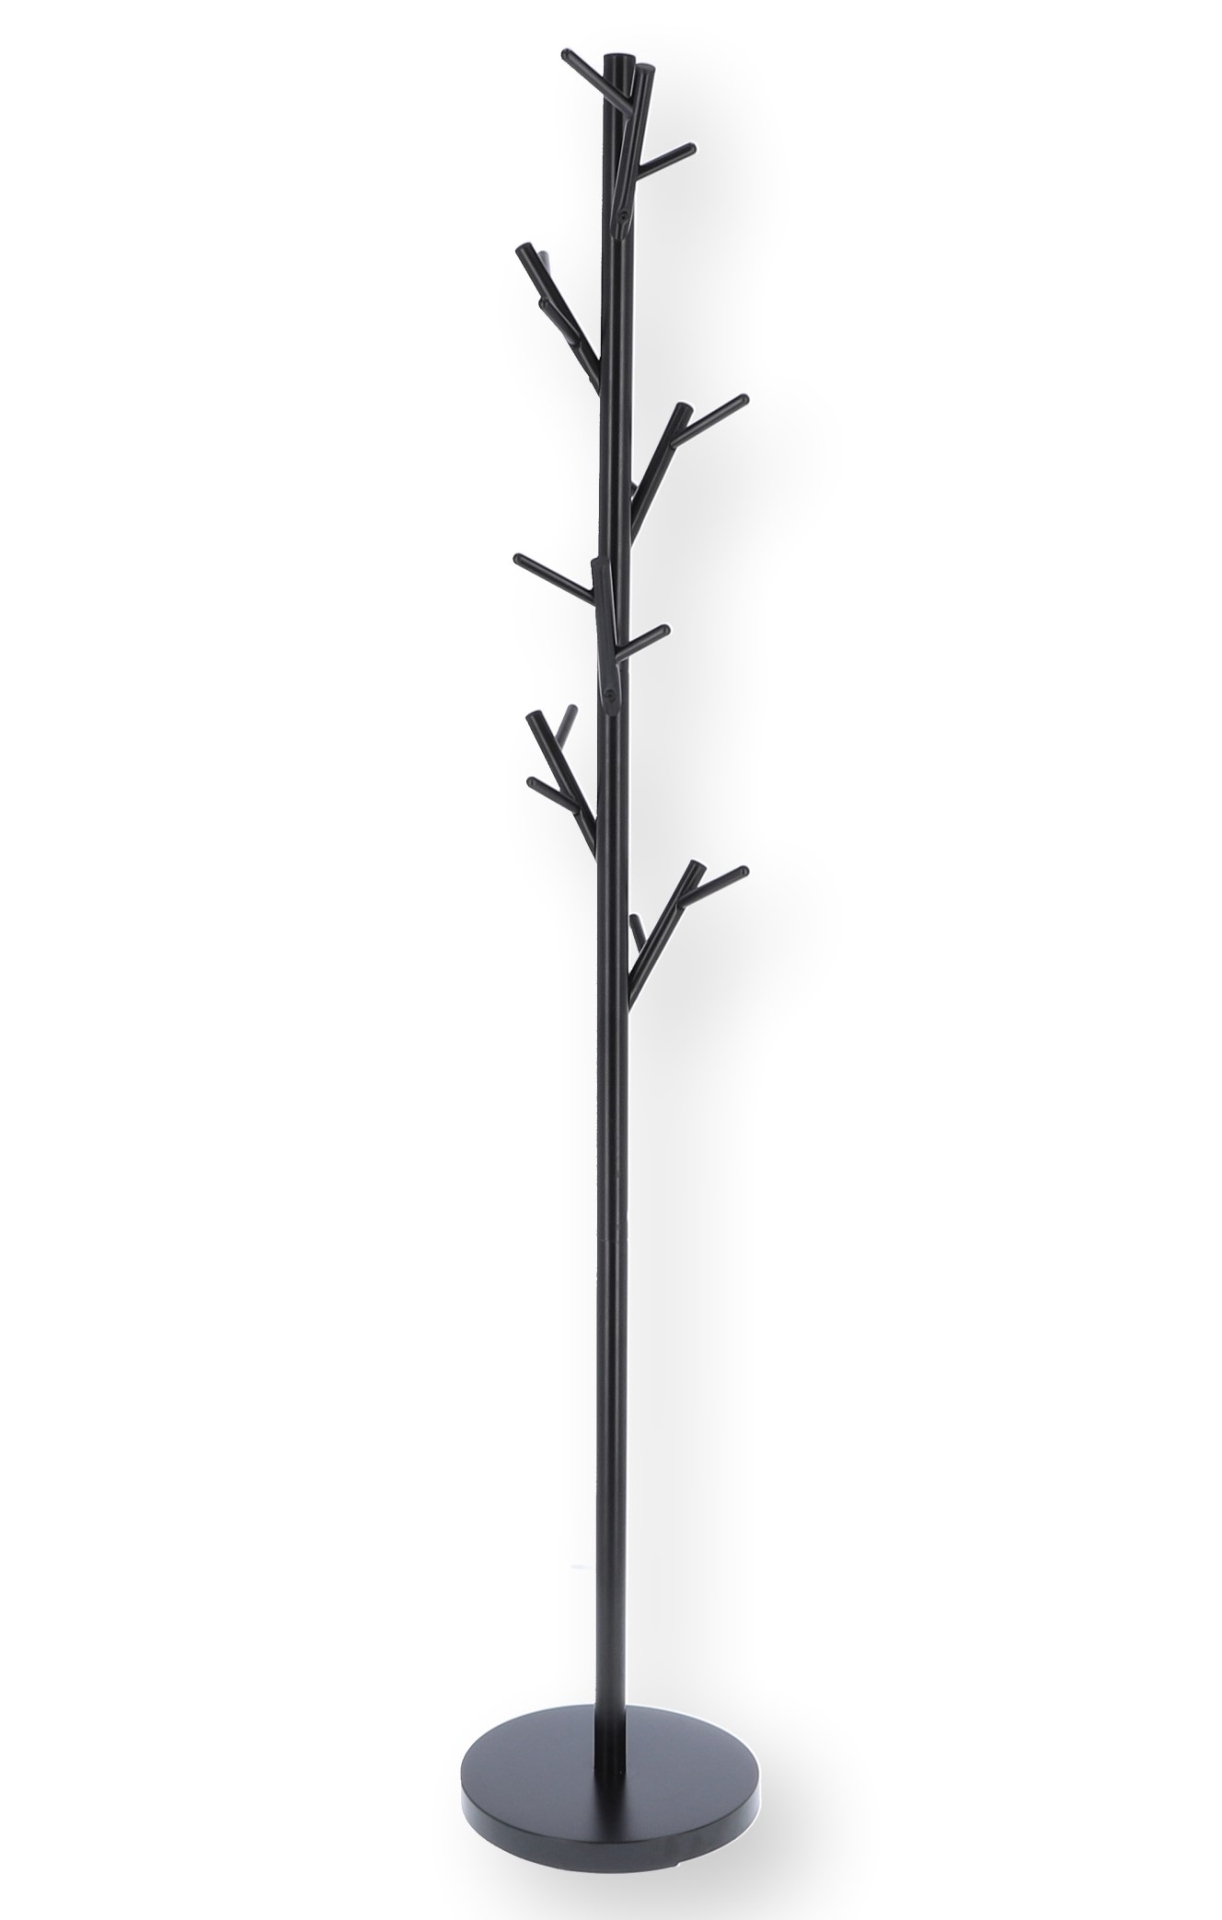 Der durch seine Form auffällige Kleiderständer Tree wurde aus Metall gefertigt, welches eine schwarze Farbe hat. Er verfügt über ausreichend Haken und ist ein Produkt der Marke Jan Kurtz.